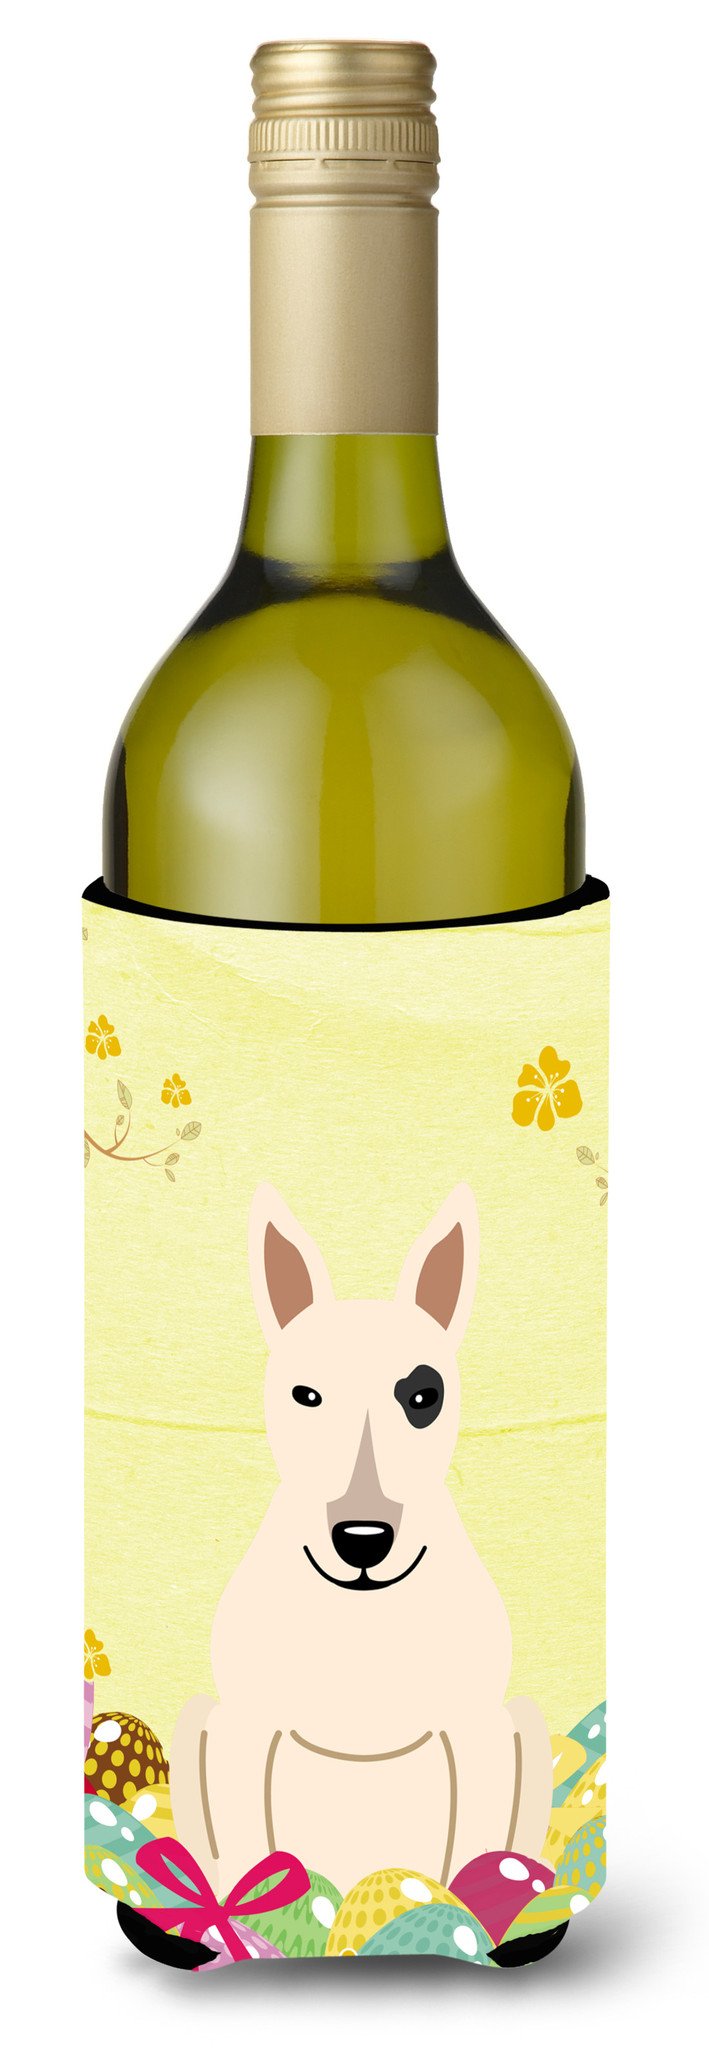 Easter Eggs Bull Terrier White Wine Bottle Beverge Insulator Hugger BB6138LITERK by Caroline's Treasures